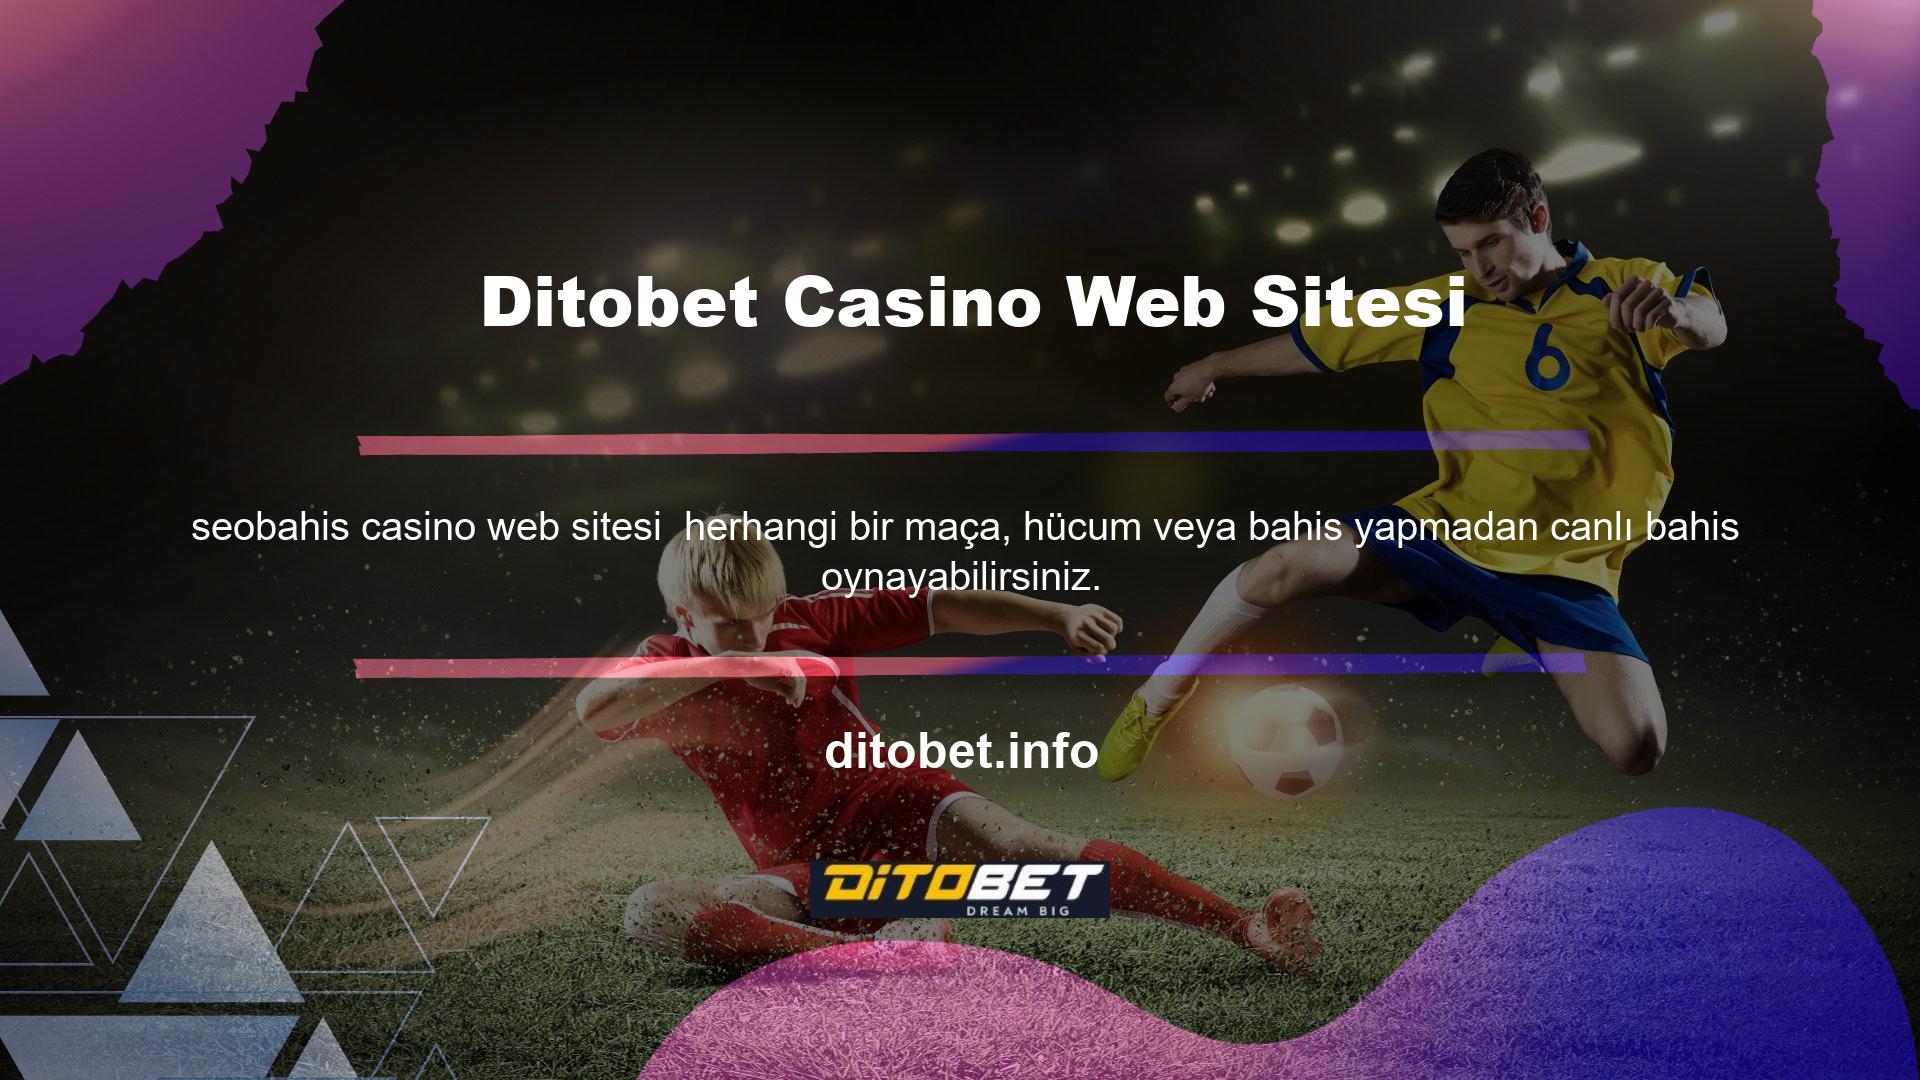 Ditobet TV canlı yayın sitesi, popüler bir slota sahiptir: Farklı bahis sitelerindeki bahisçilerin çoğu tarafından takip ediliyor